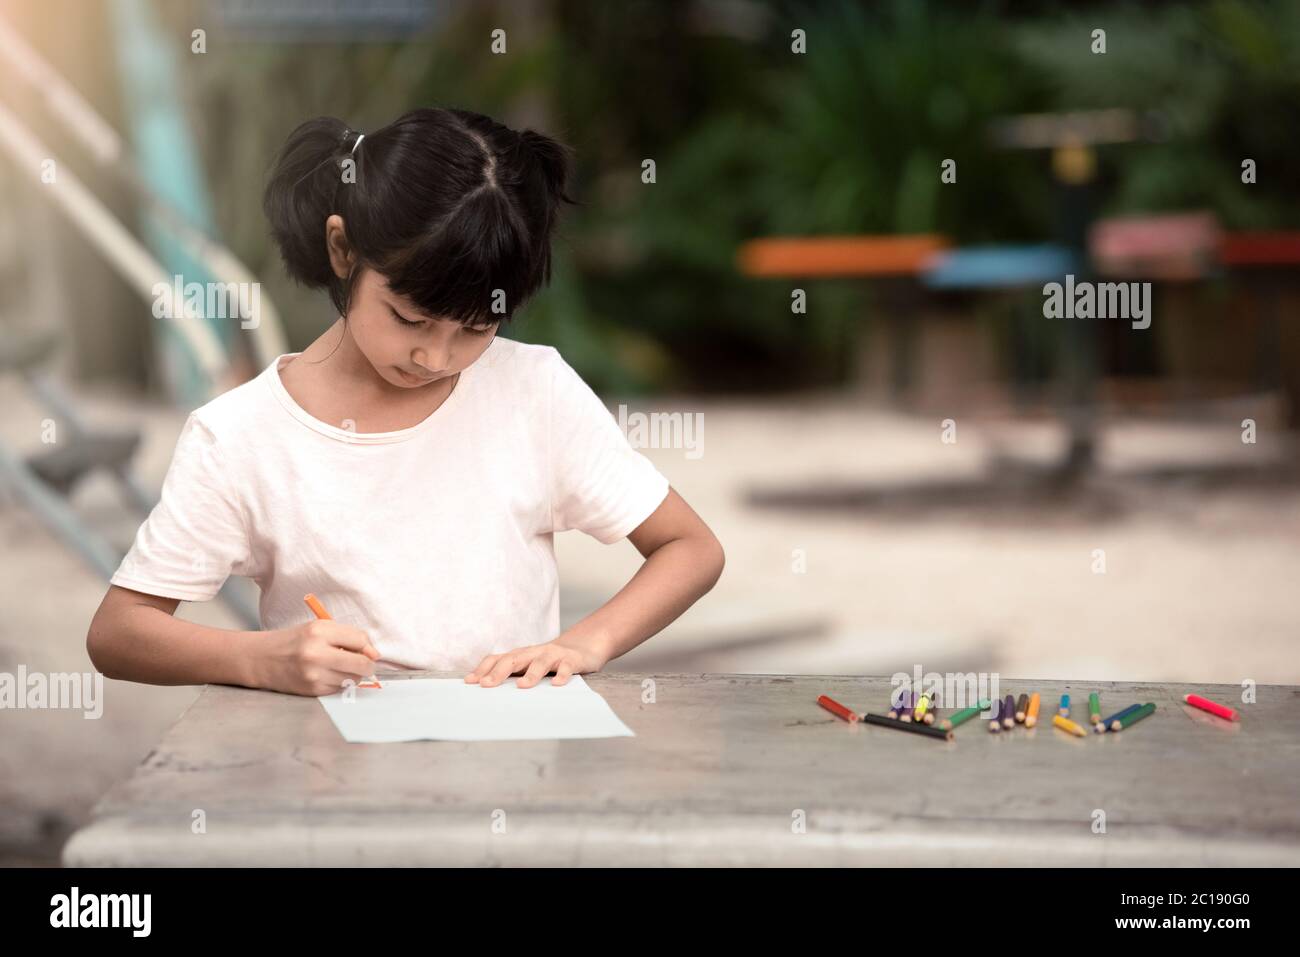 Asiatische Mädchen Kind sitzen und malen auf dem Spielplatz. Stockfoto